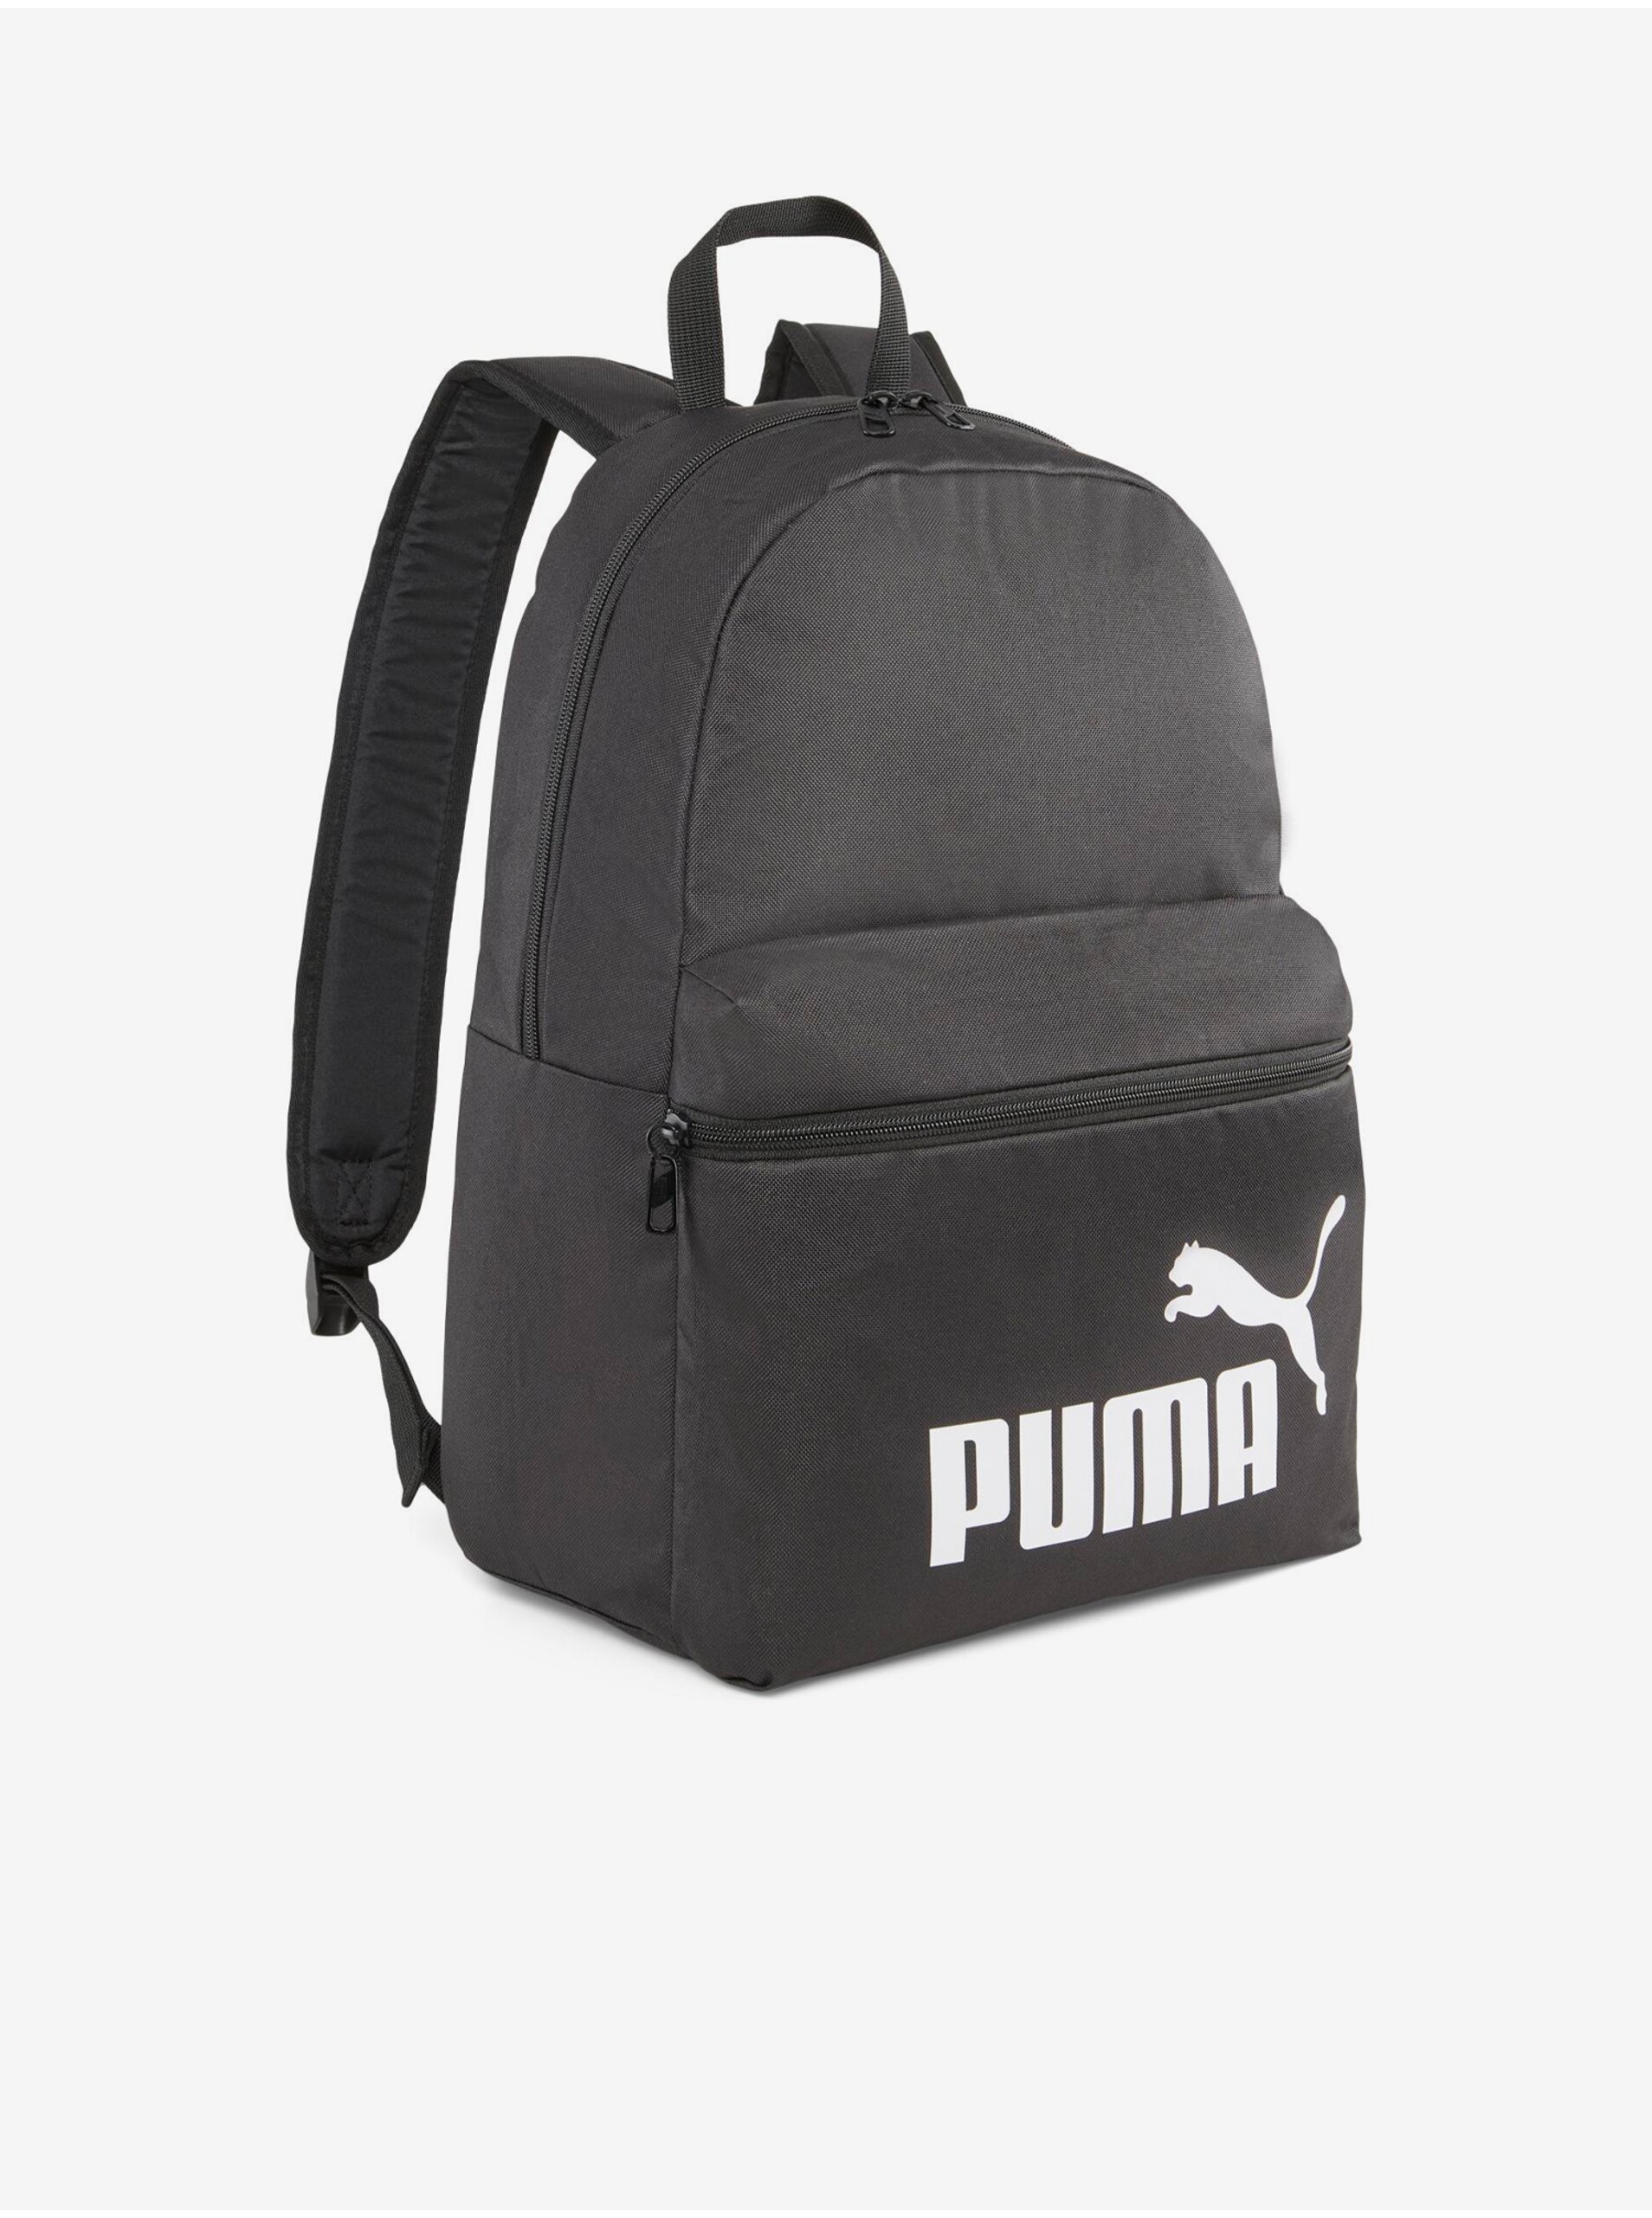 Black Puma Phase Backpack - Men's